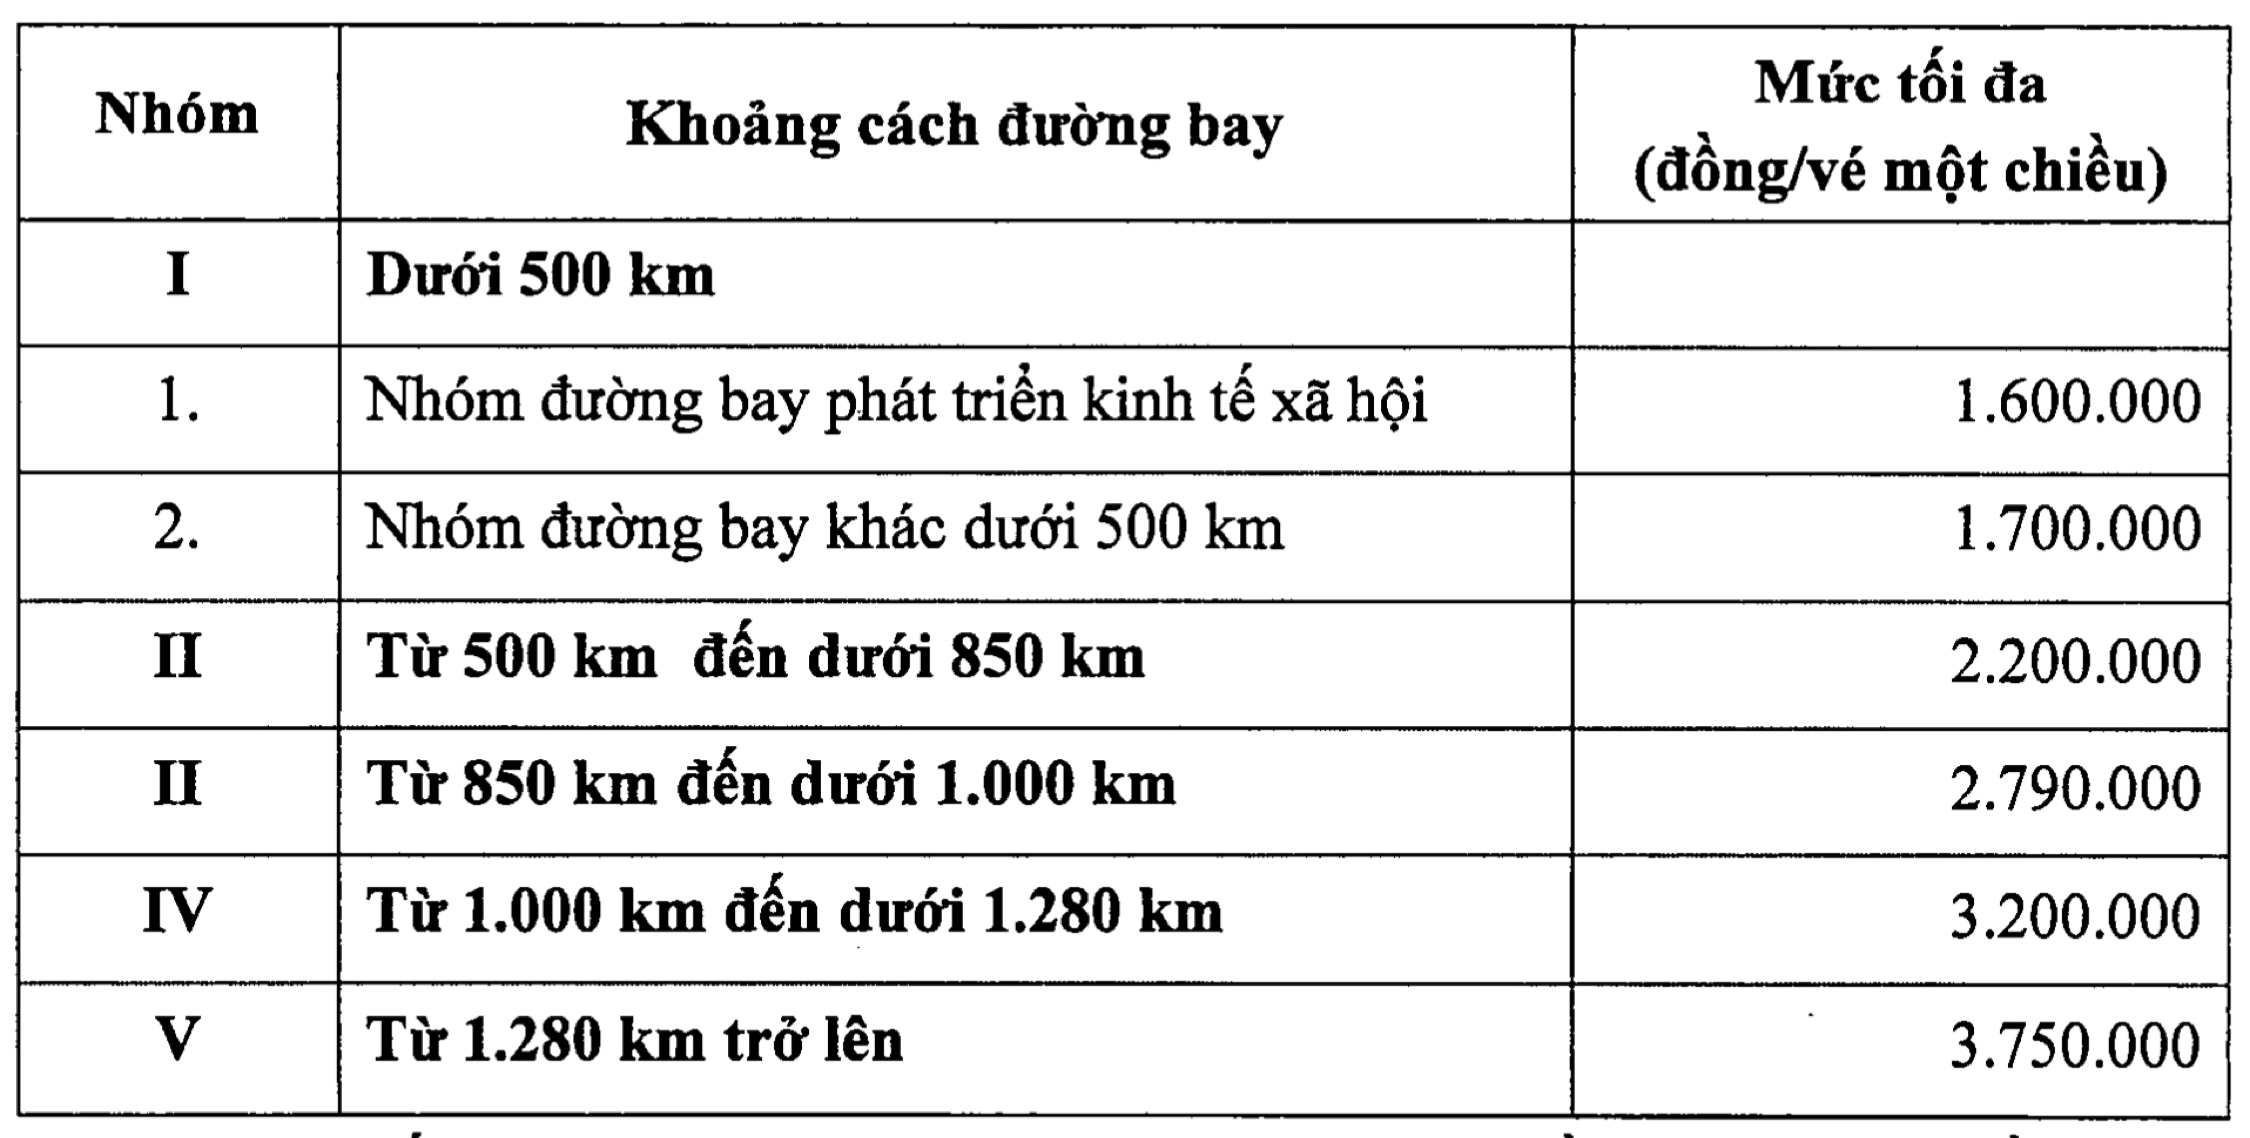 Tăng giá trần, vé phổ thông khứ hồi Hà Nội - TP. Hồ Chí Minh có thể lên đến gần 7 triệu đồng 2